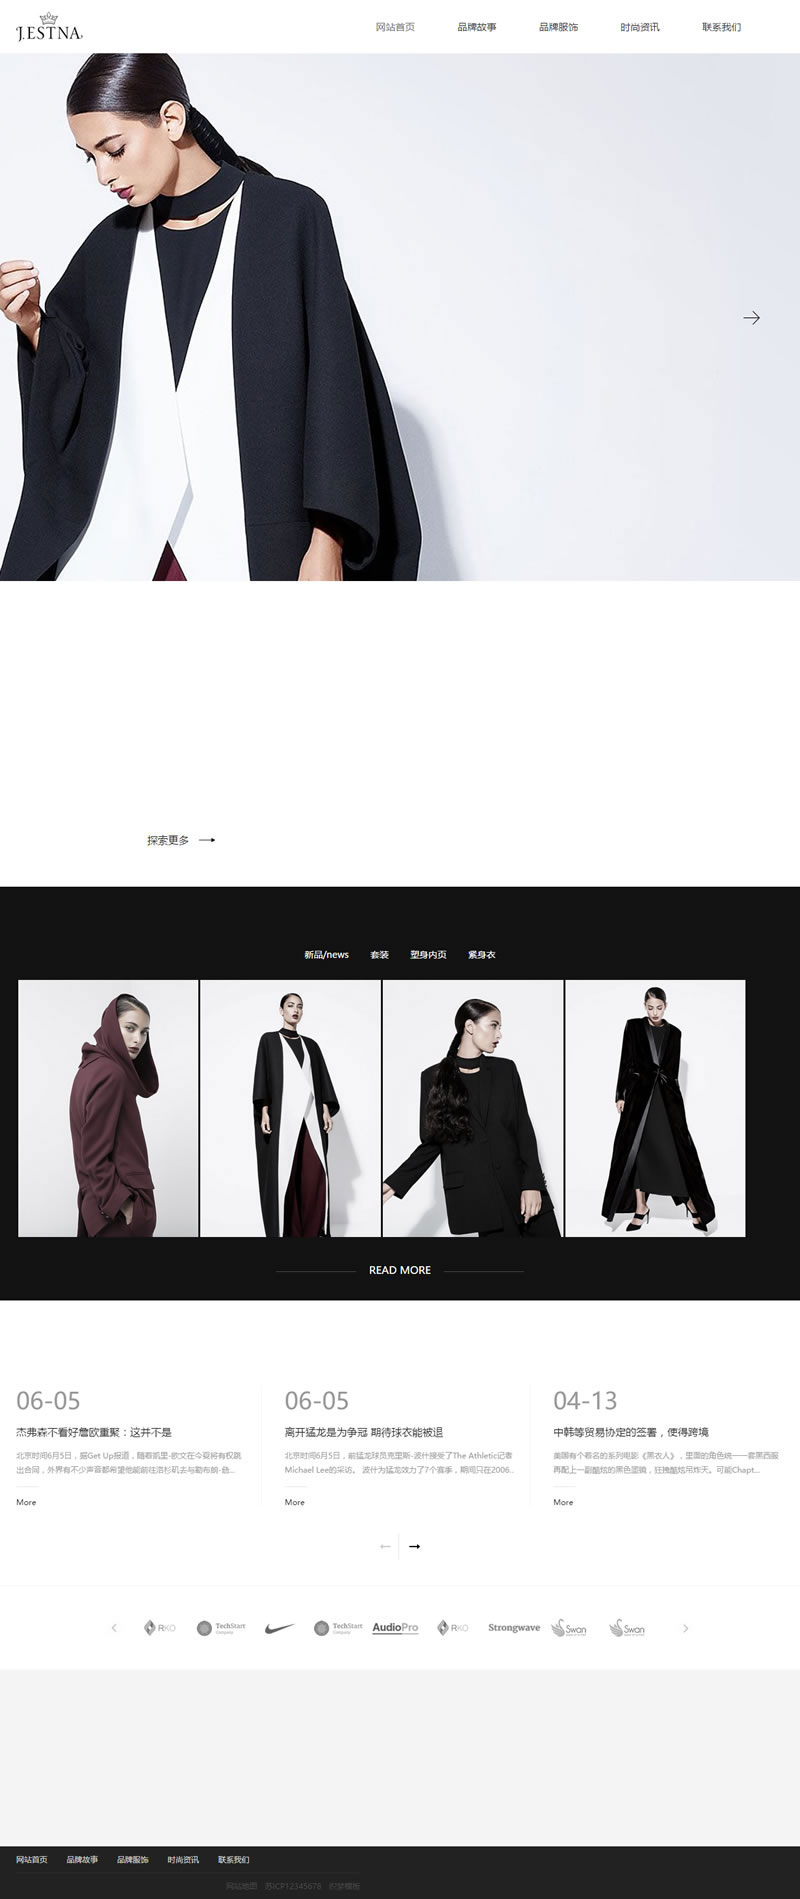 [企业源码]织梦dedecms响应式品牌服装时装设计企业网站模板(自适应手机移动端)插图